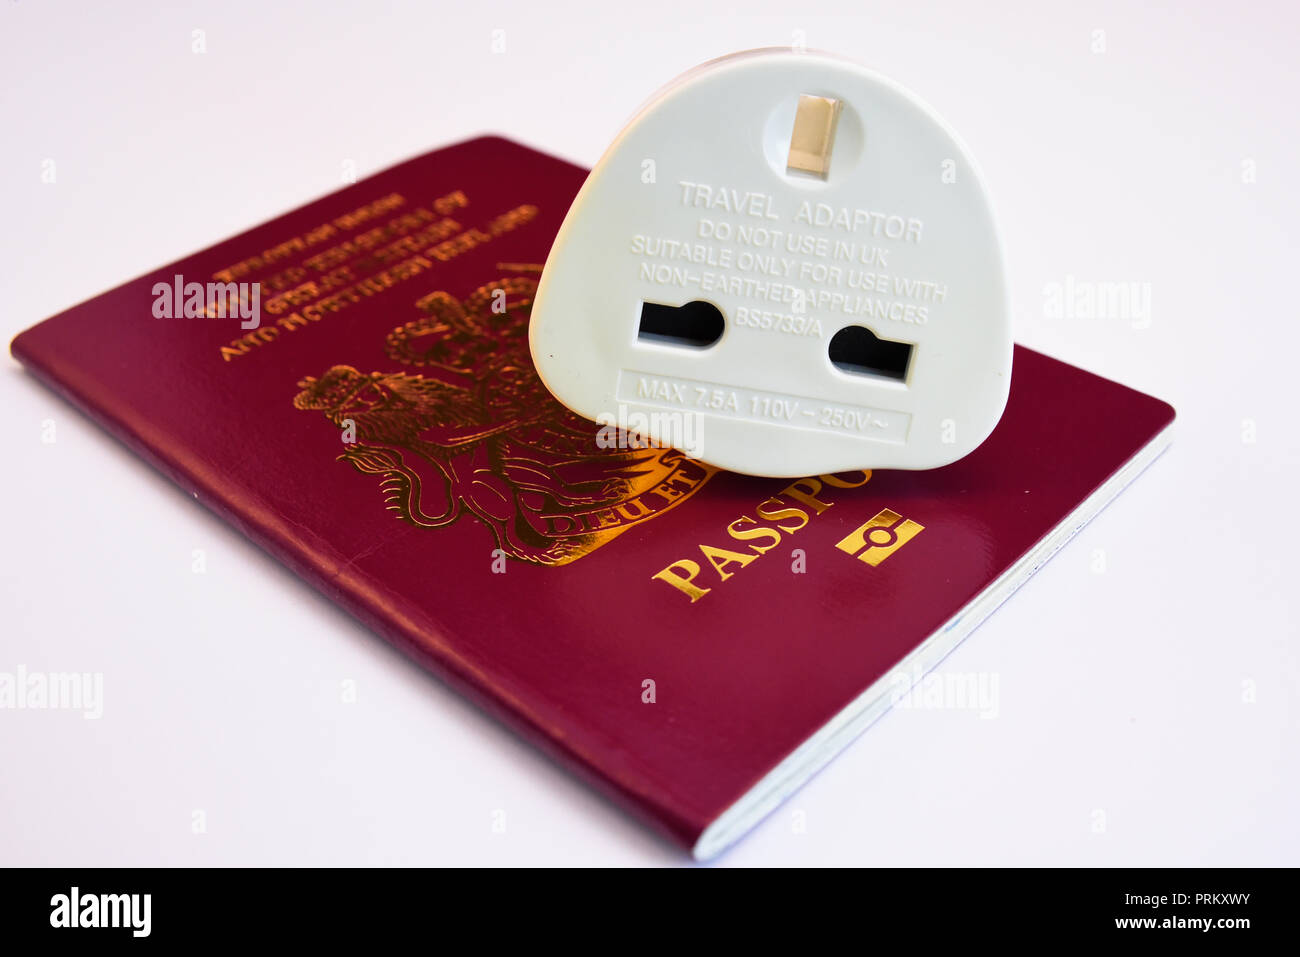 Unione Europea Regno Unito di Gran Bretagna e Irlanda del Nord di borgogna passaporto biometrico con adattatore da viaggio spina. Isolato su sfondo bianco Foto Stock